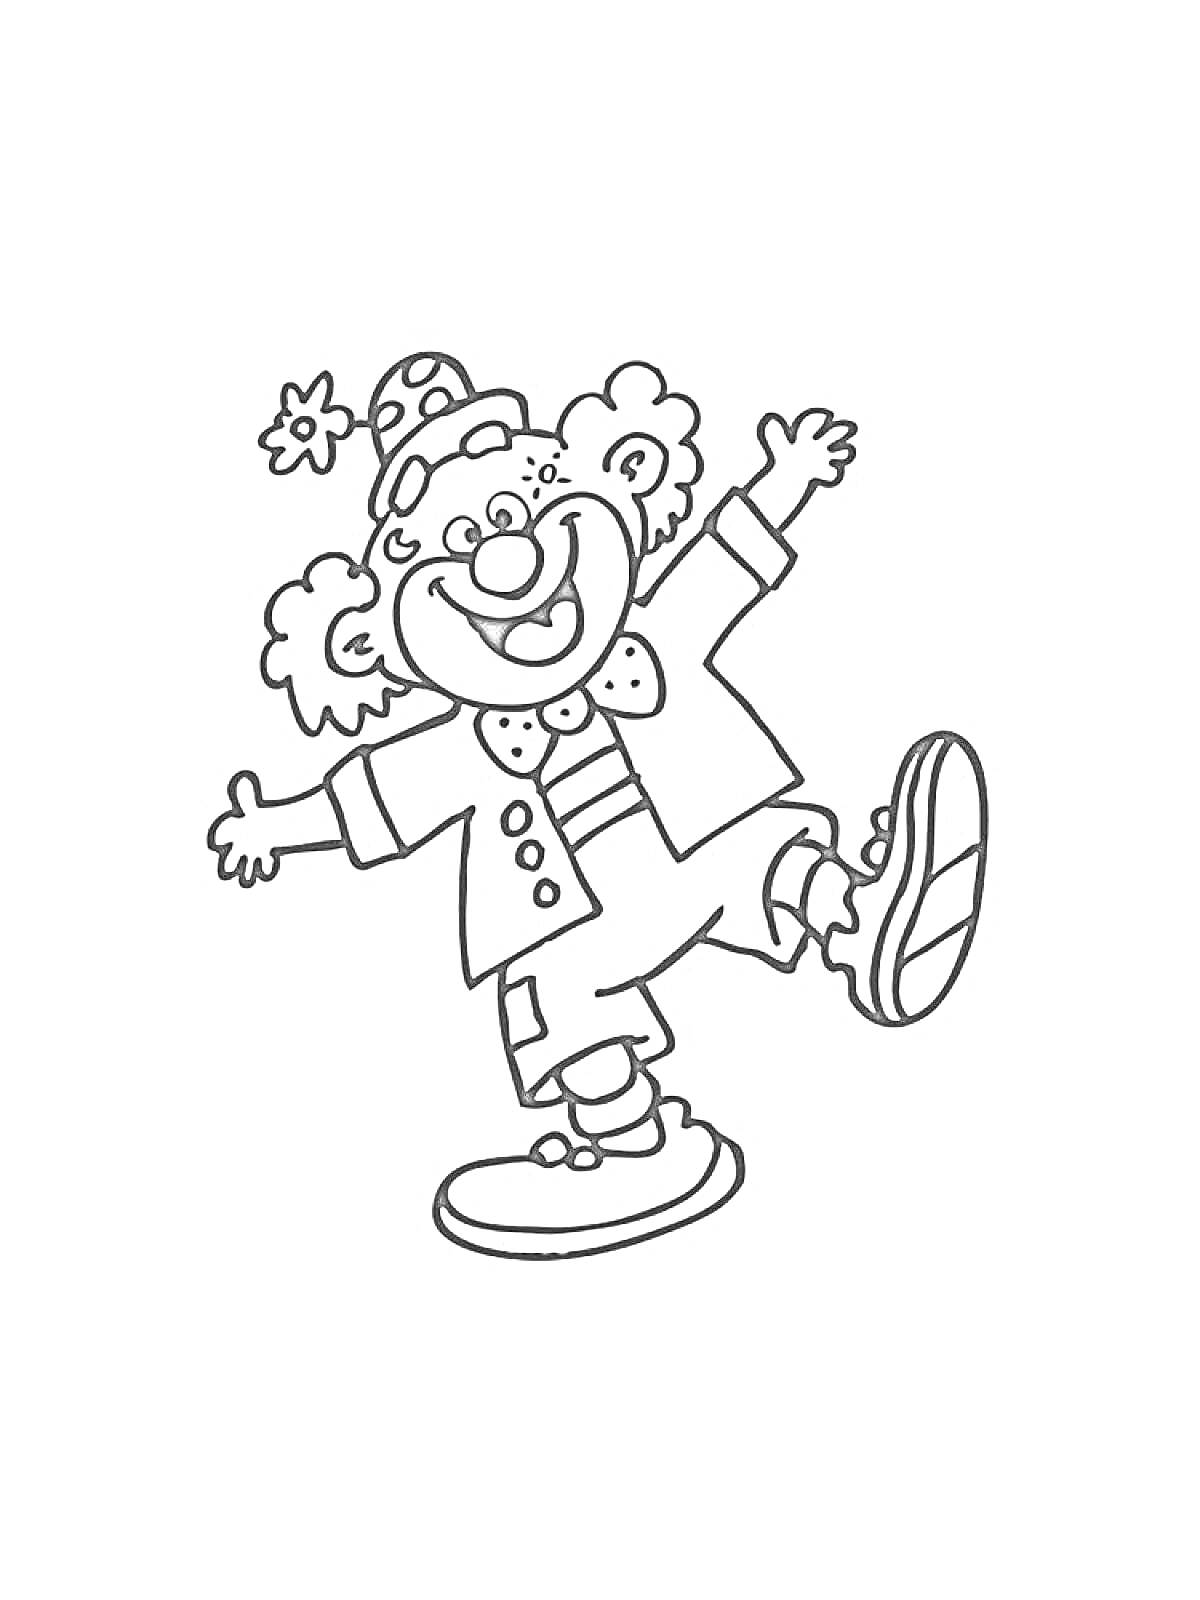 Раскраска Клоун с шапочкой и бабочкой, размахивающий руками и поднявший одну ногу